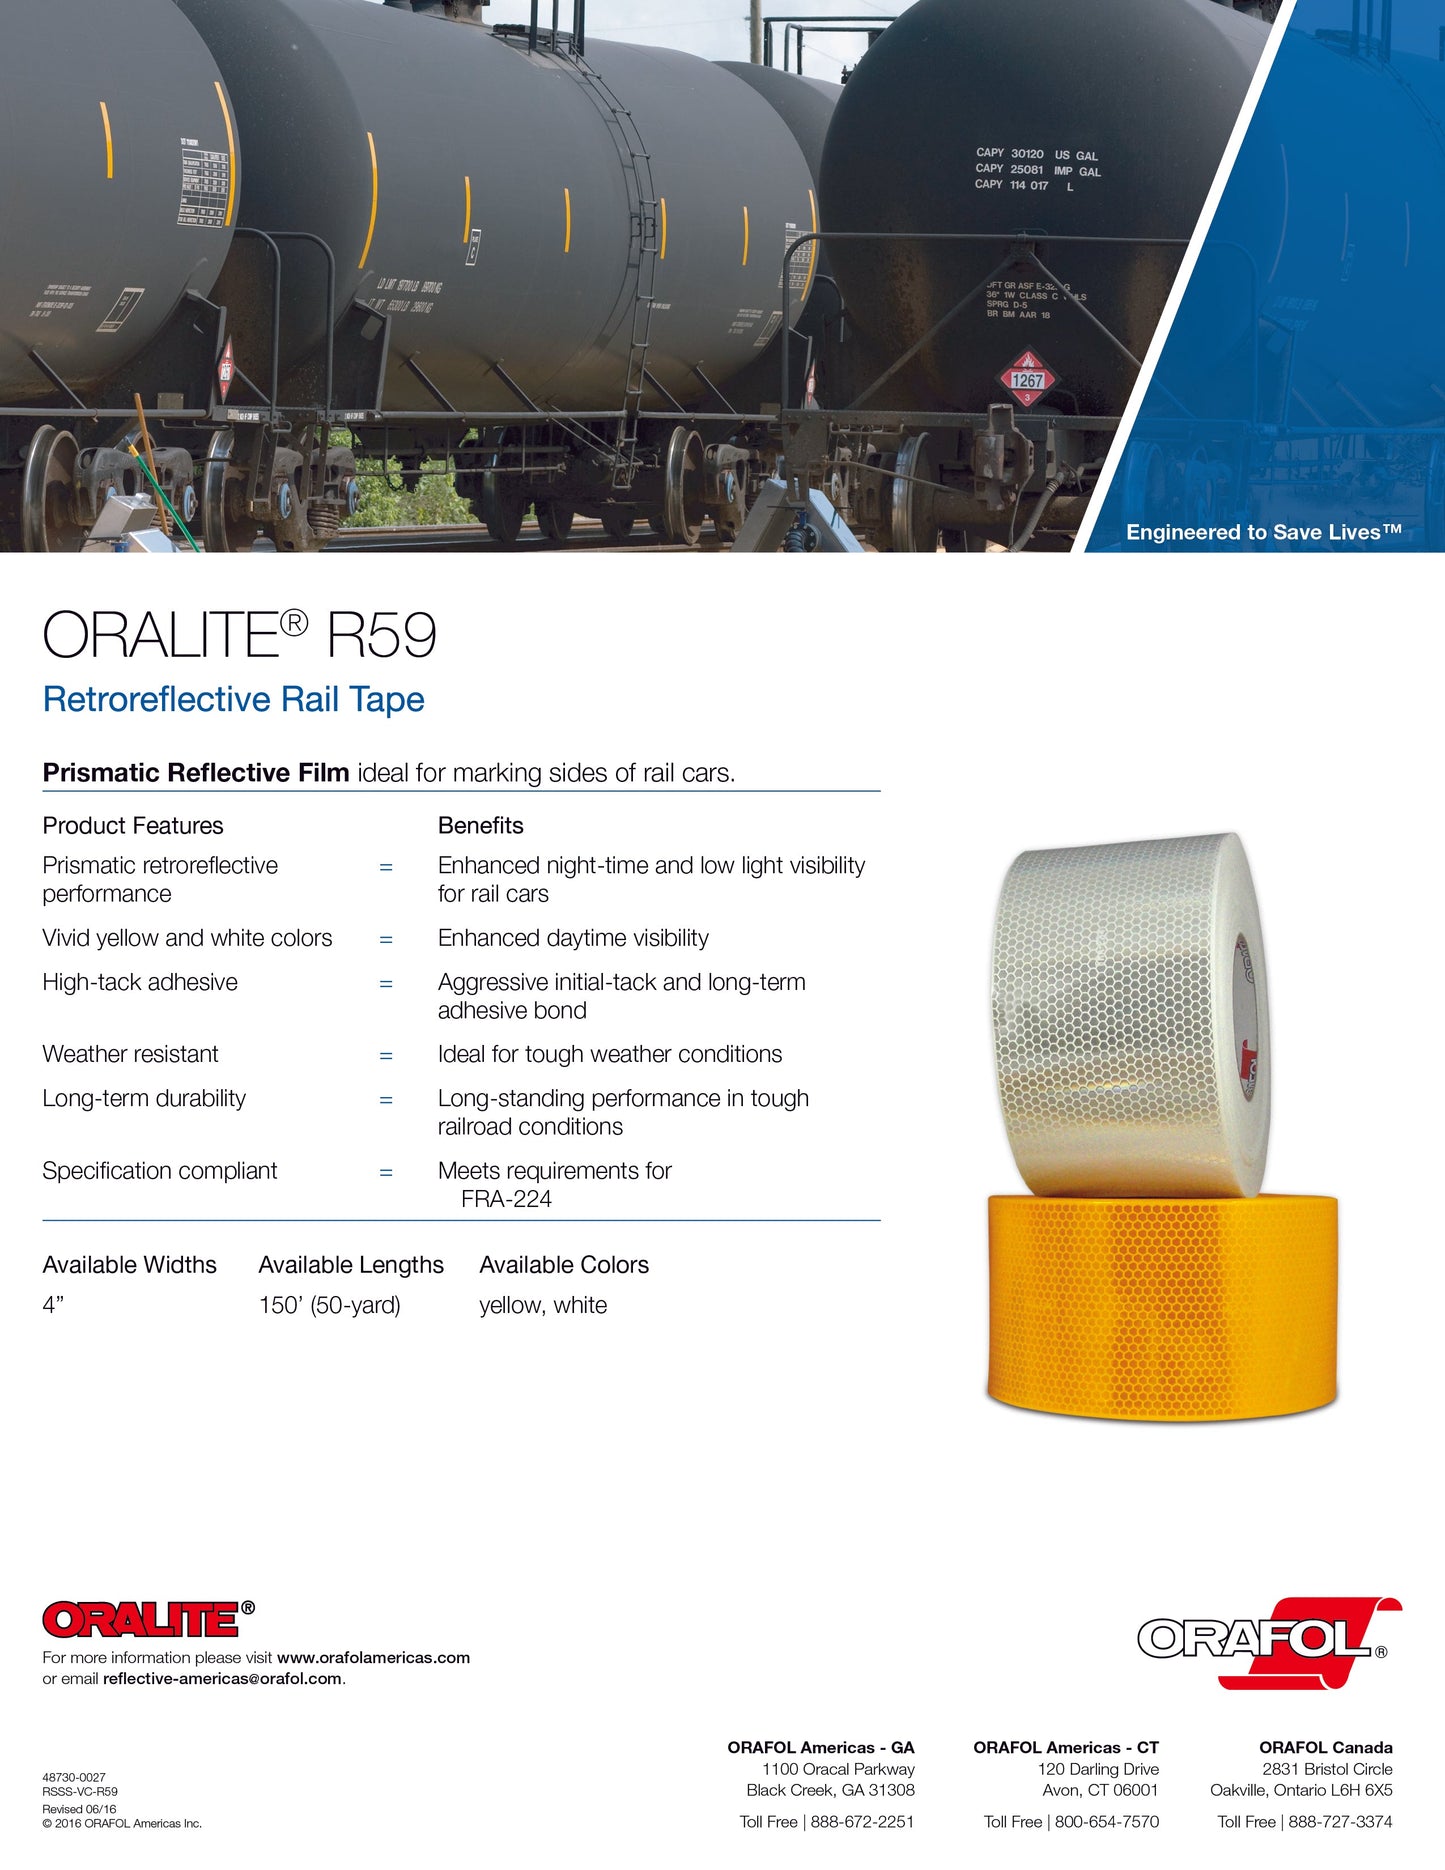 ORALITE® R59 Retroreflective Rail Tape